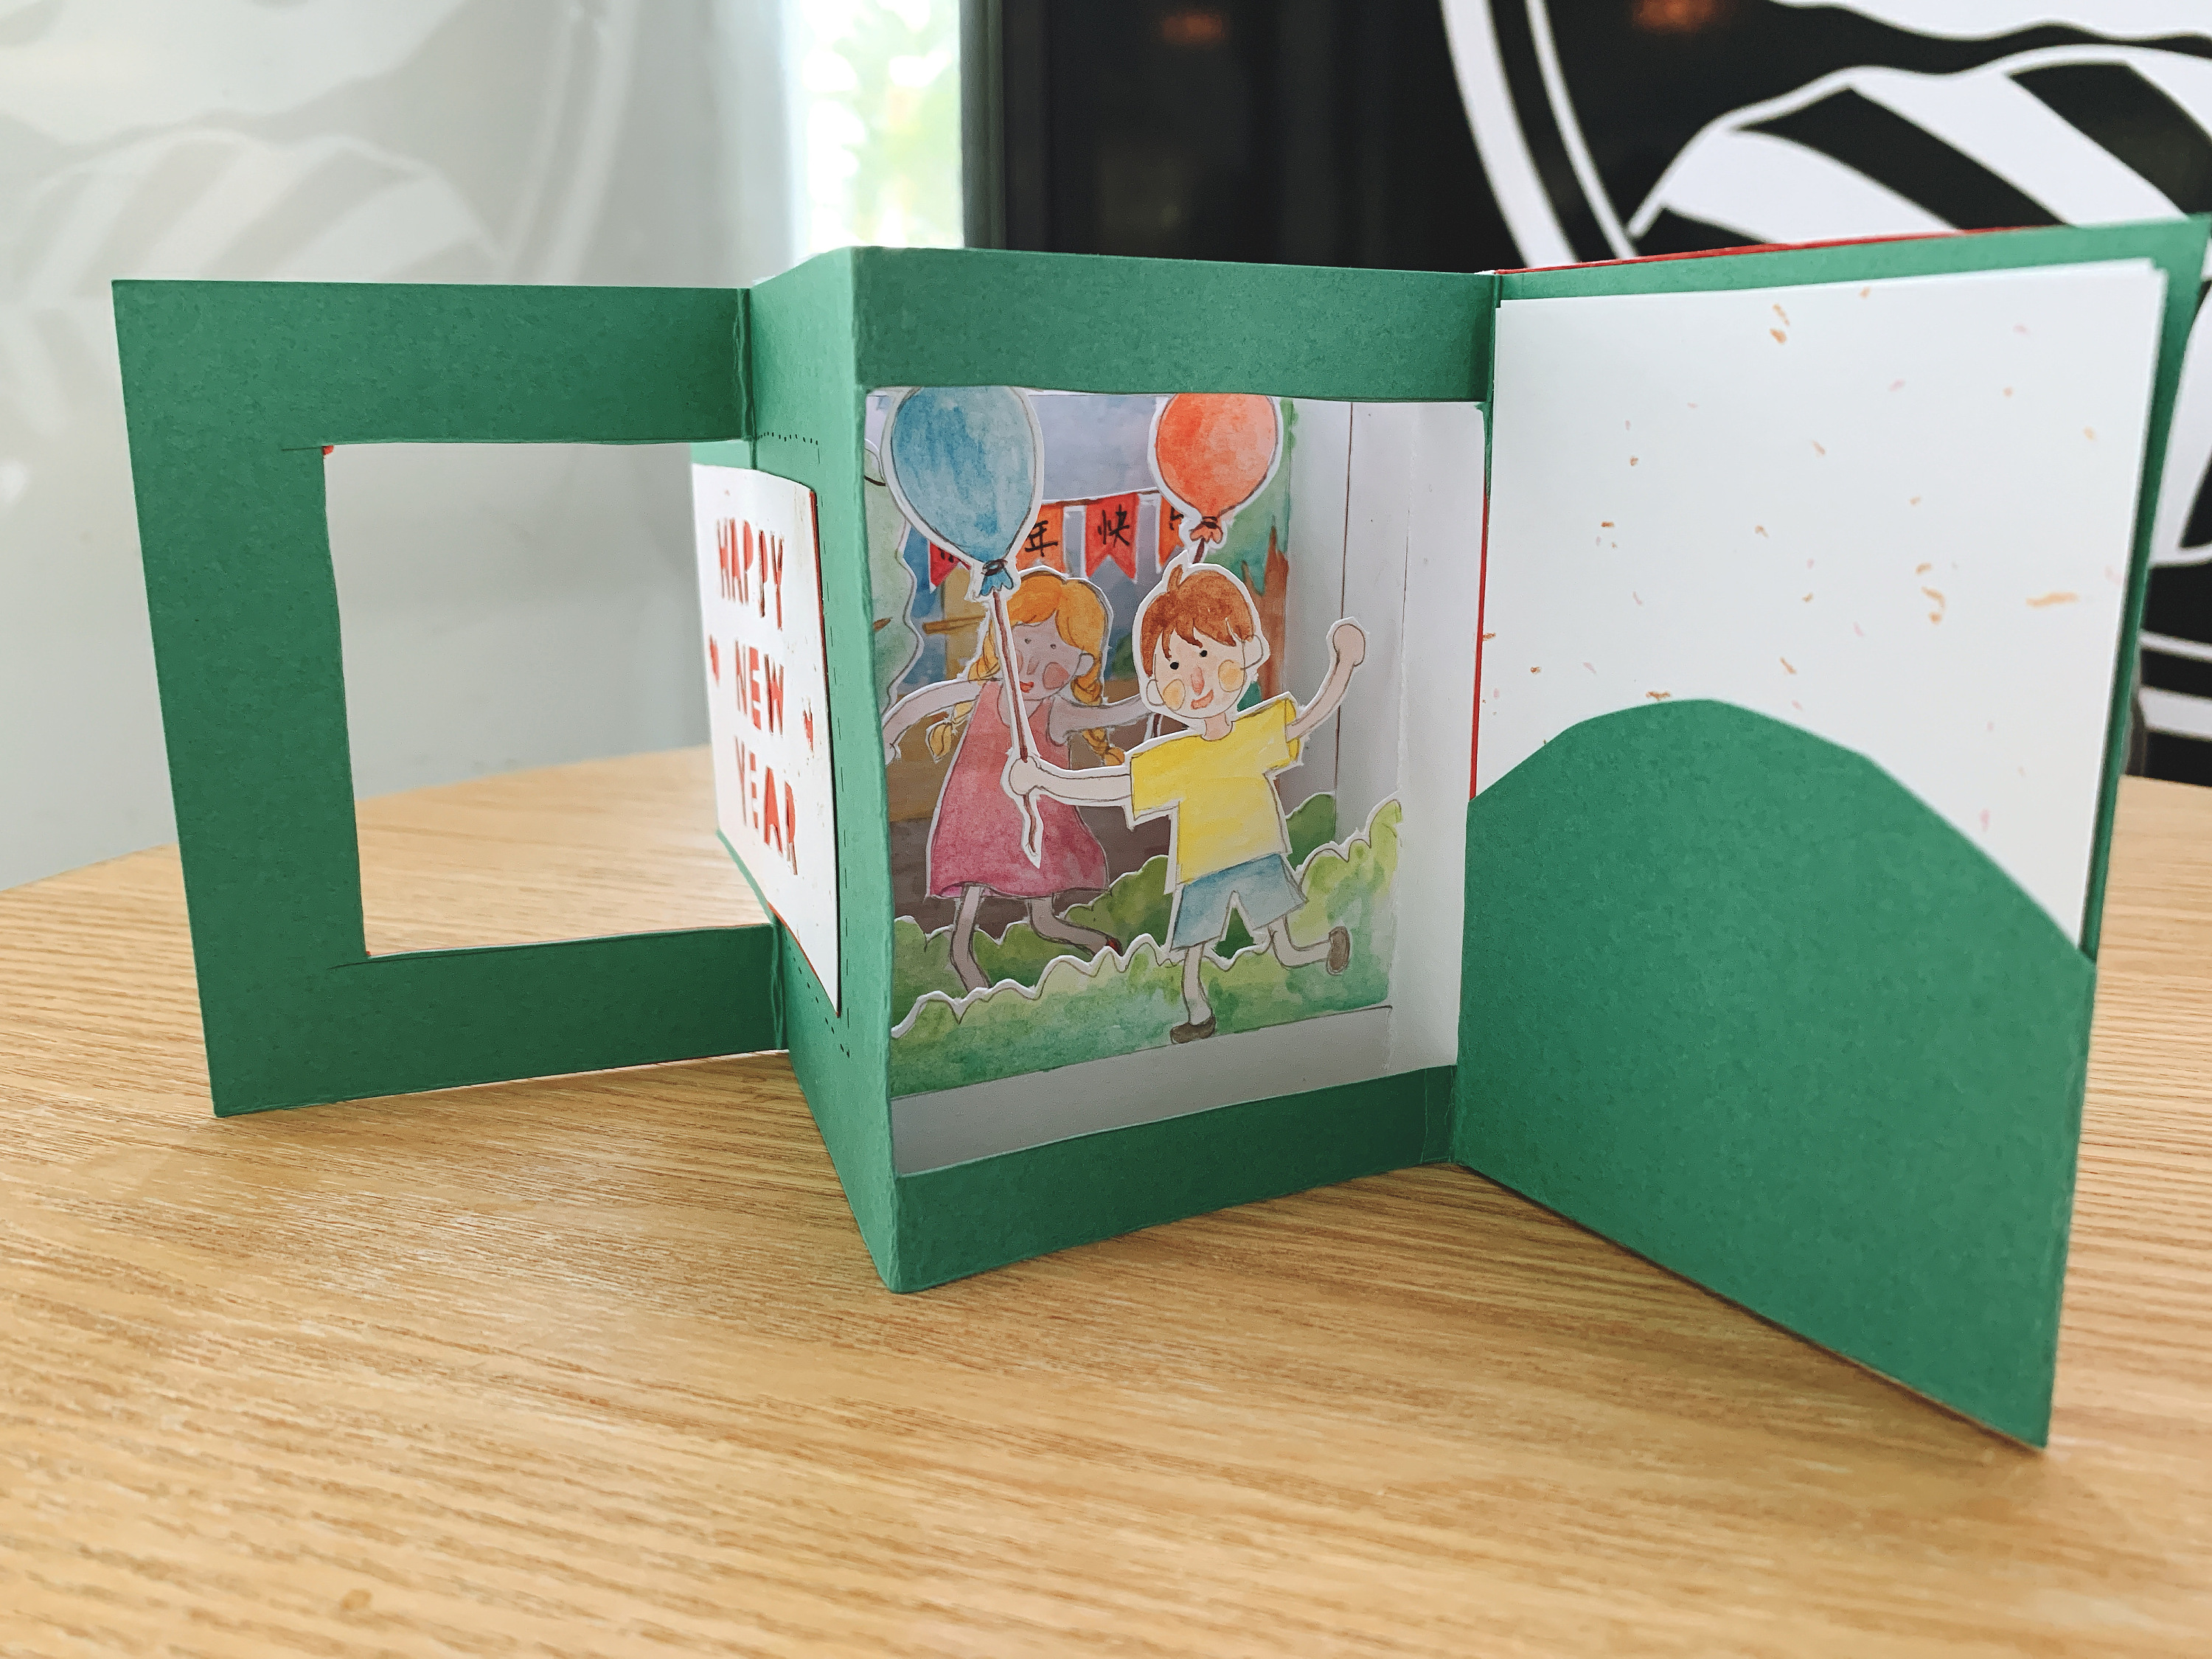 厂家现货批发3D立体贺卡手工制作创意祝福卡镂空生日贺卡-阿里巴巴